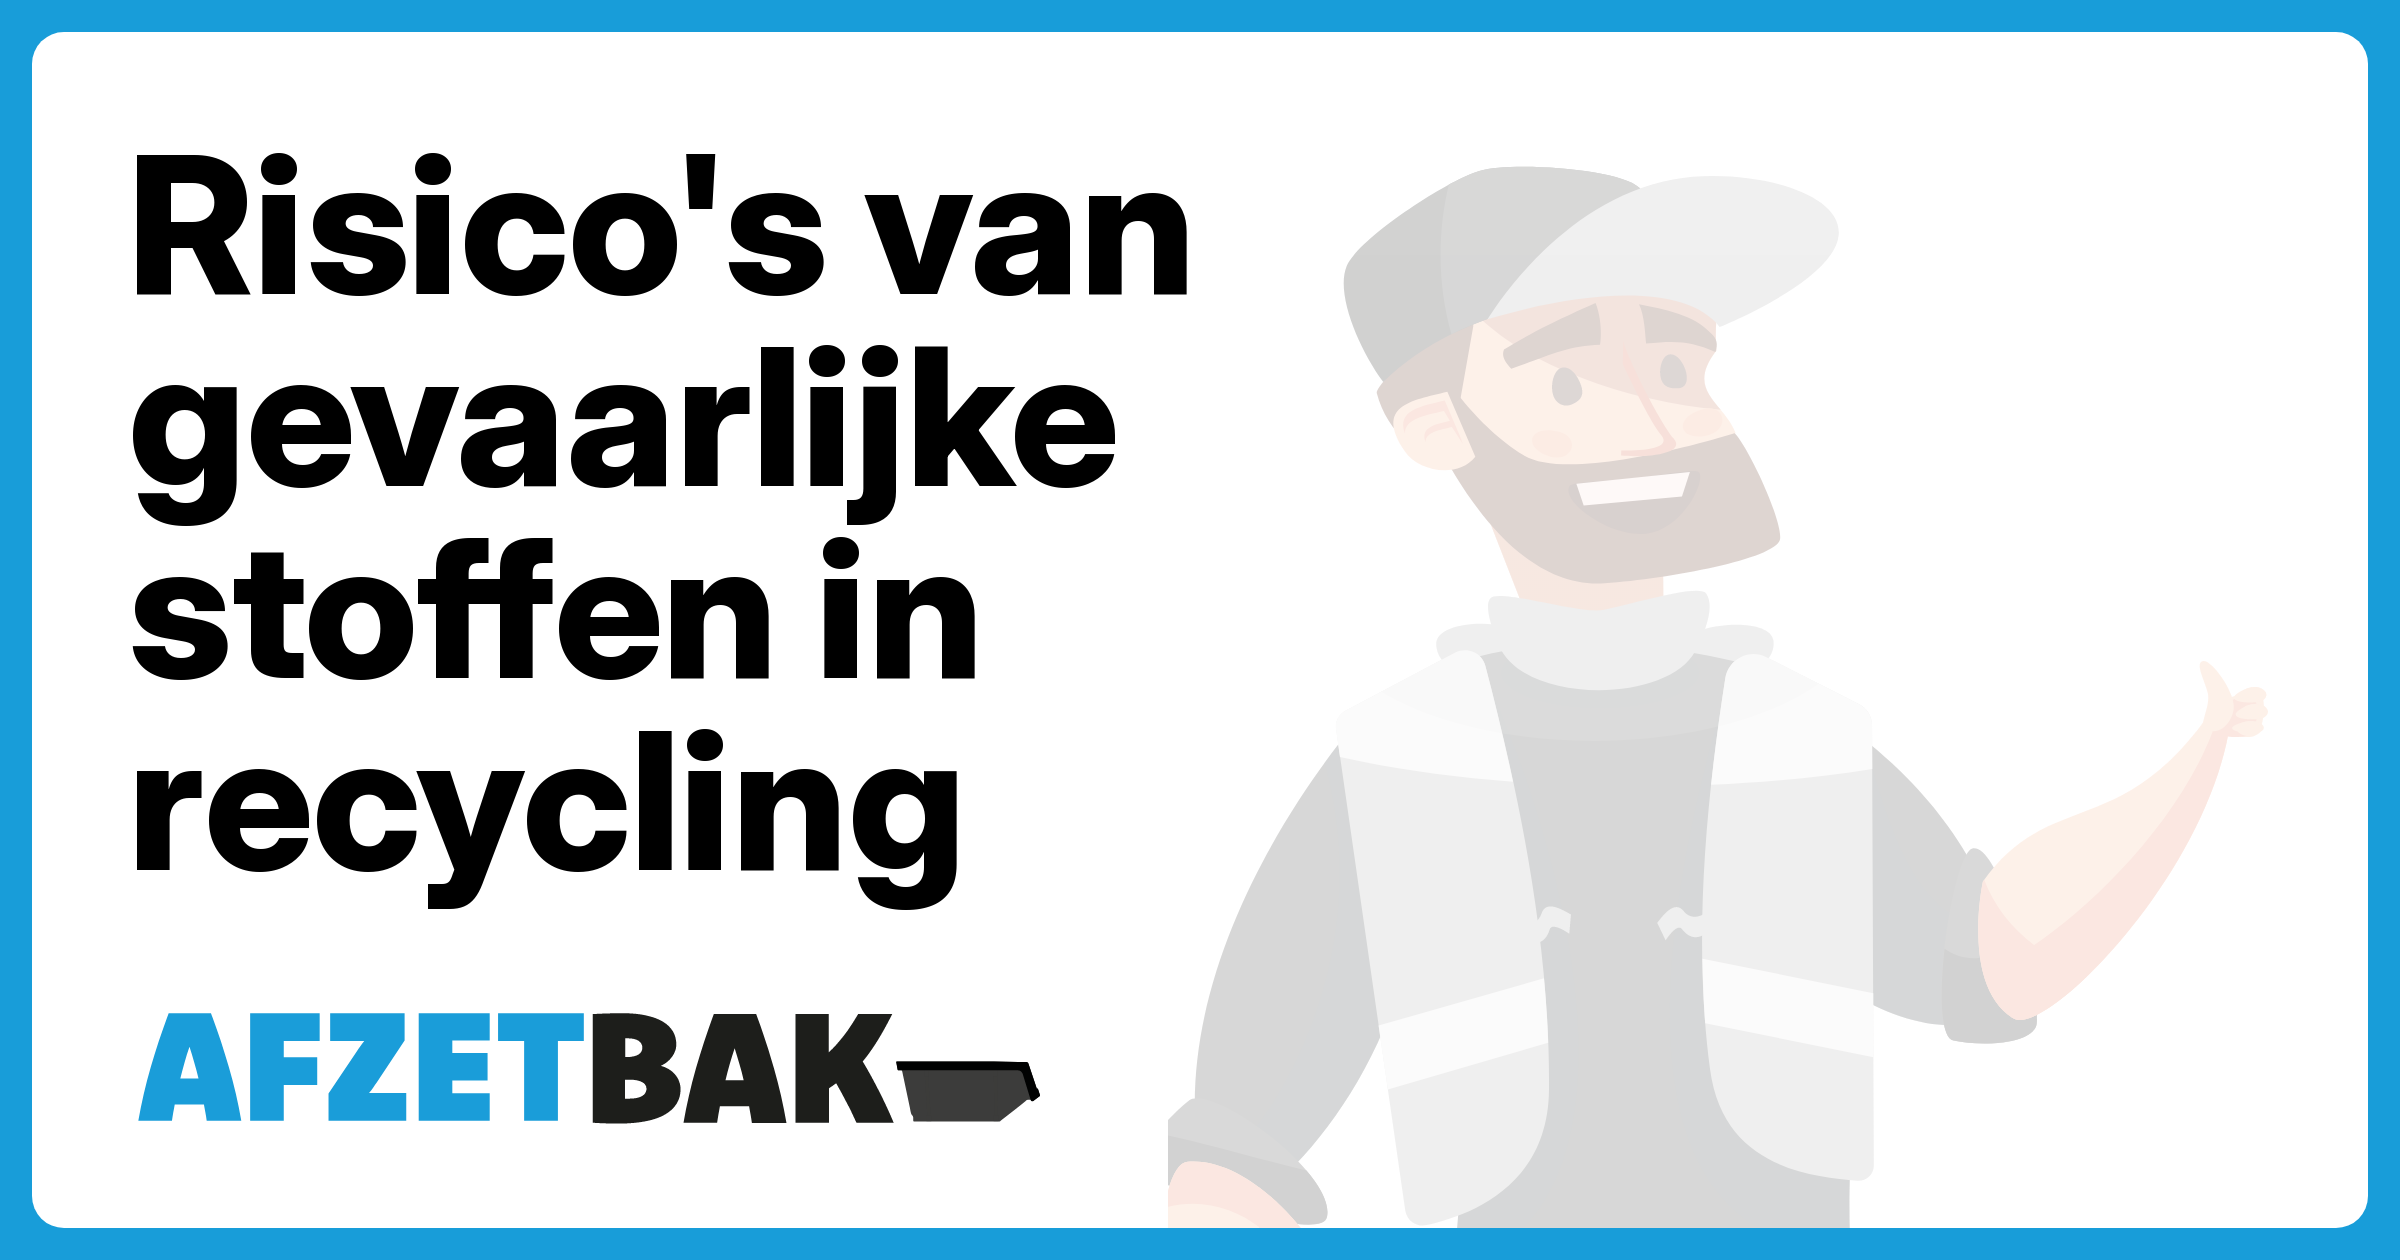 Risico's van gevaarlijke stoffen in recycling - Afzetbak.nl